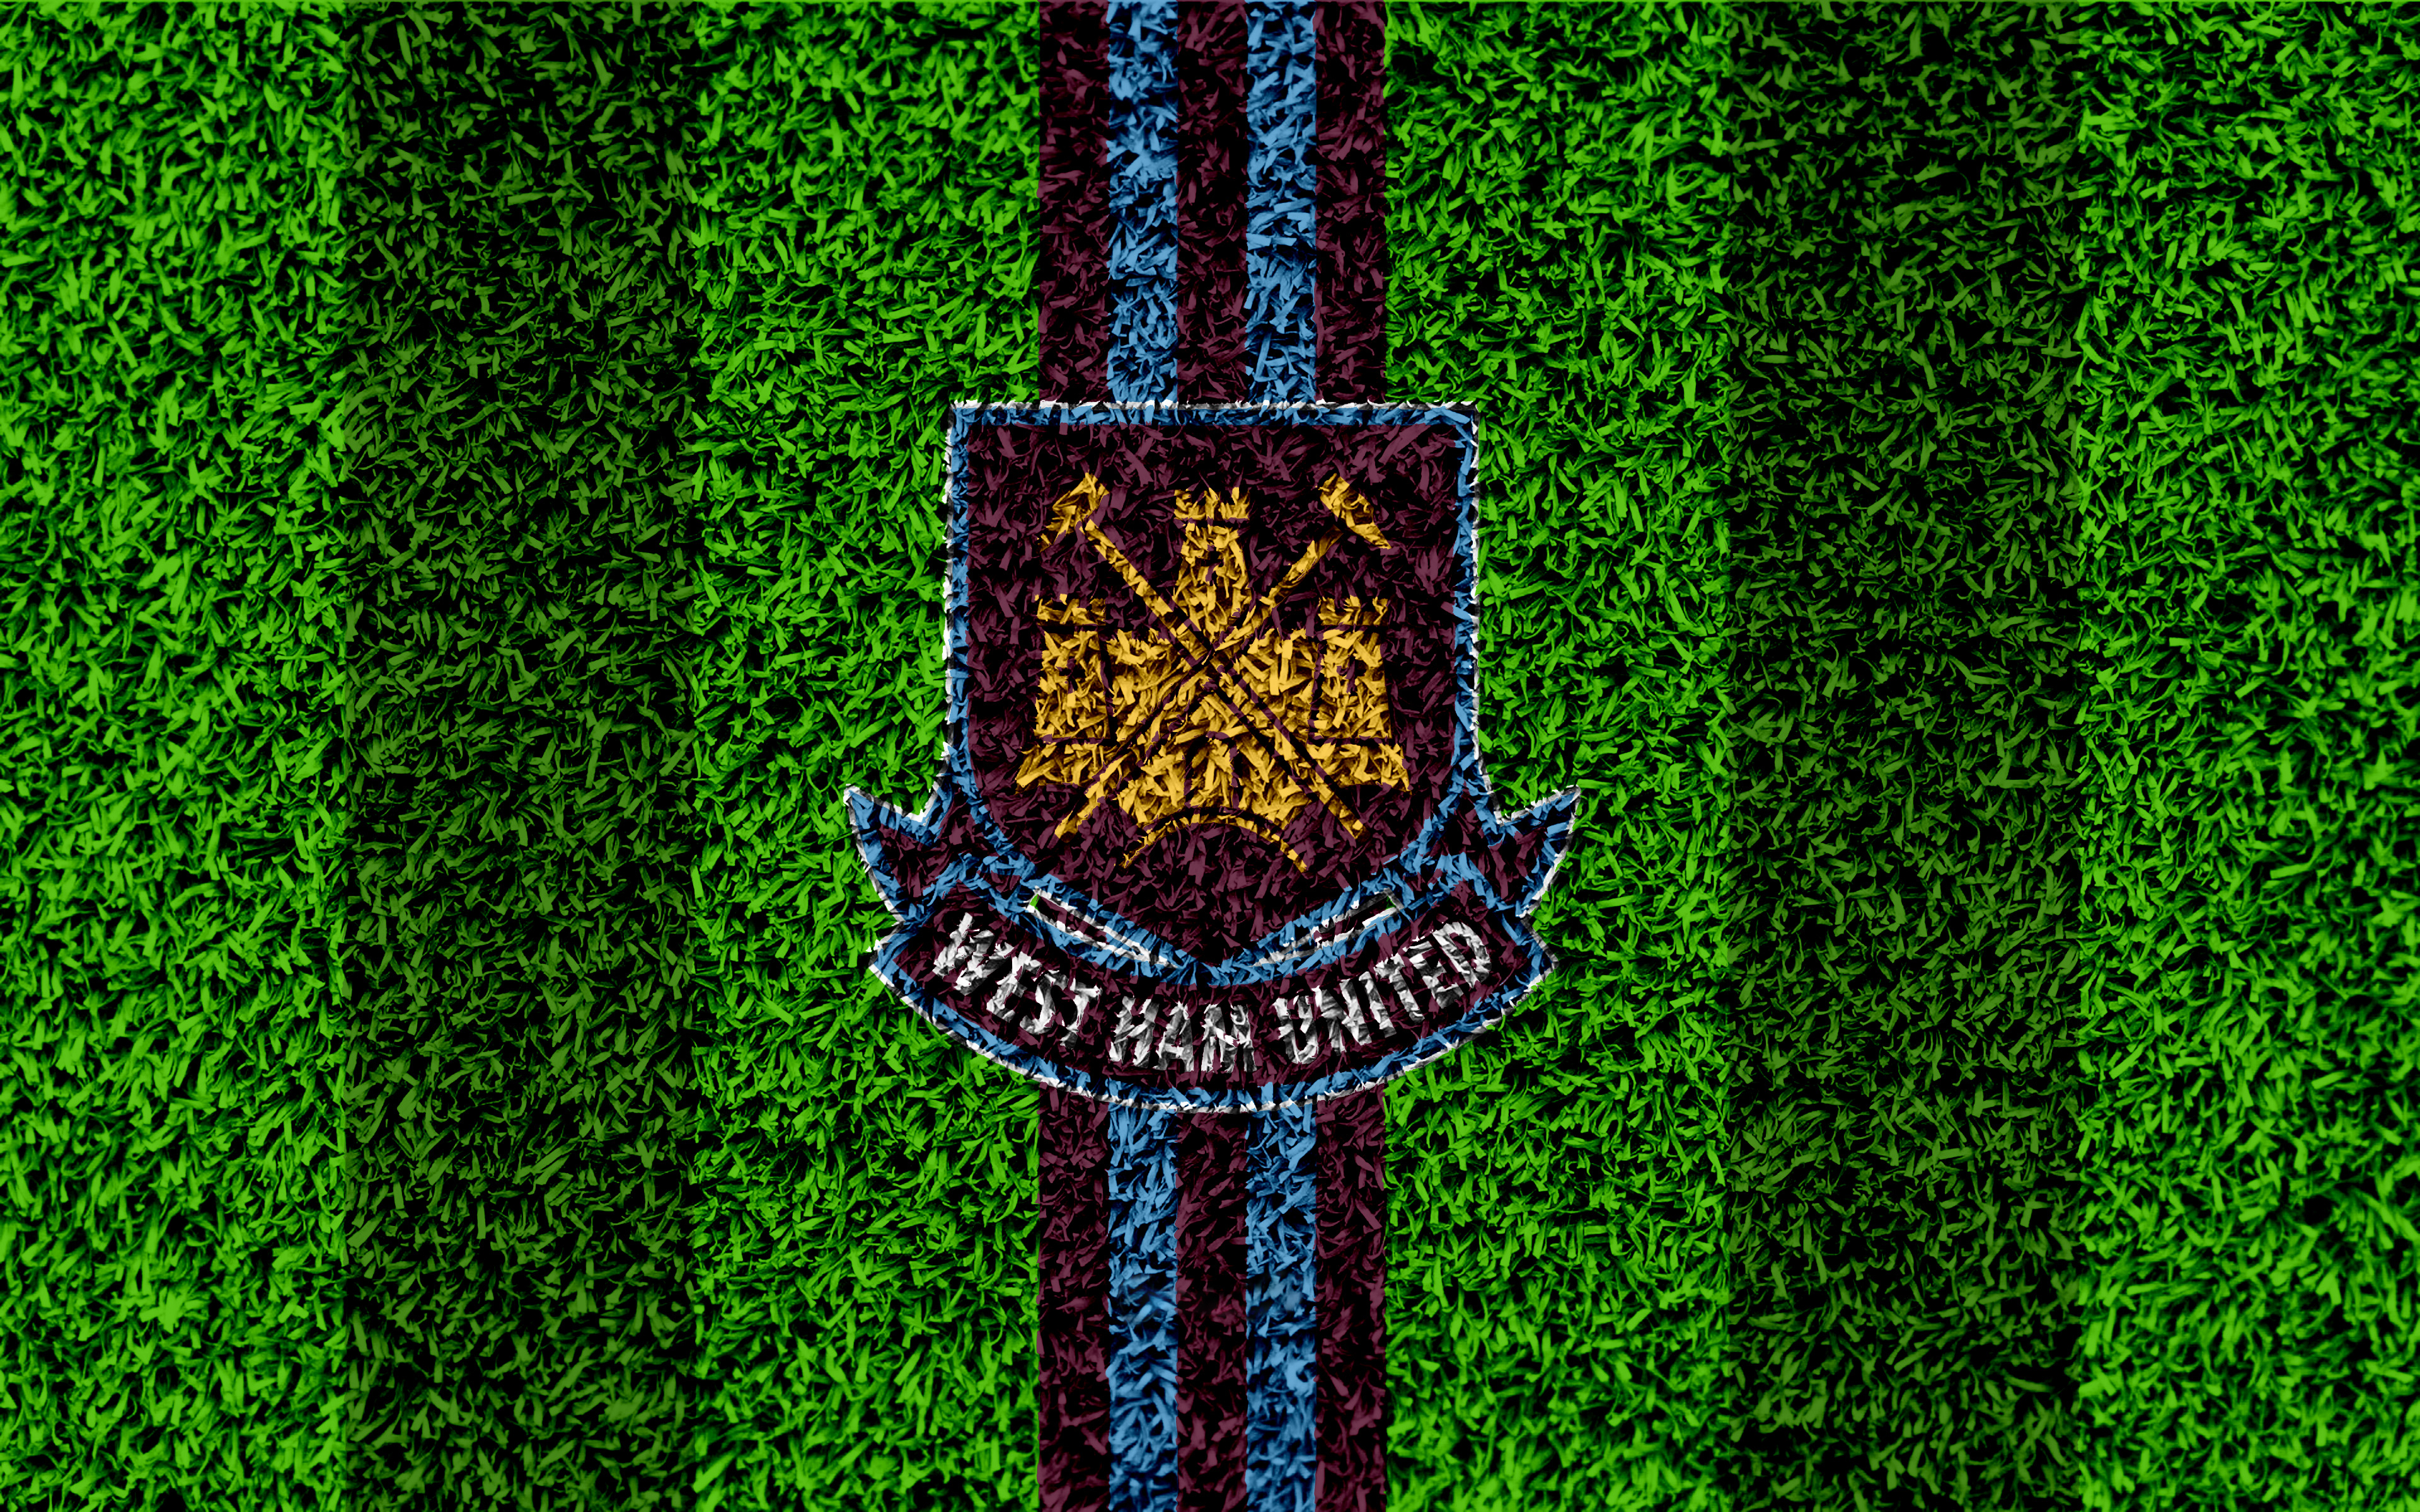 Handy-Wallpaper Sport, Fußball, Logo, Emblem, West Ham United kostenlos herunterladen.